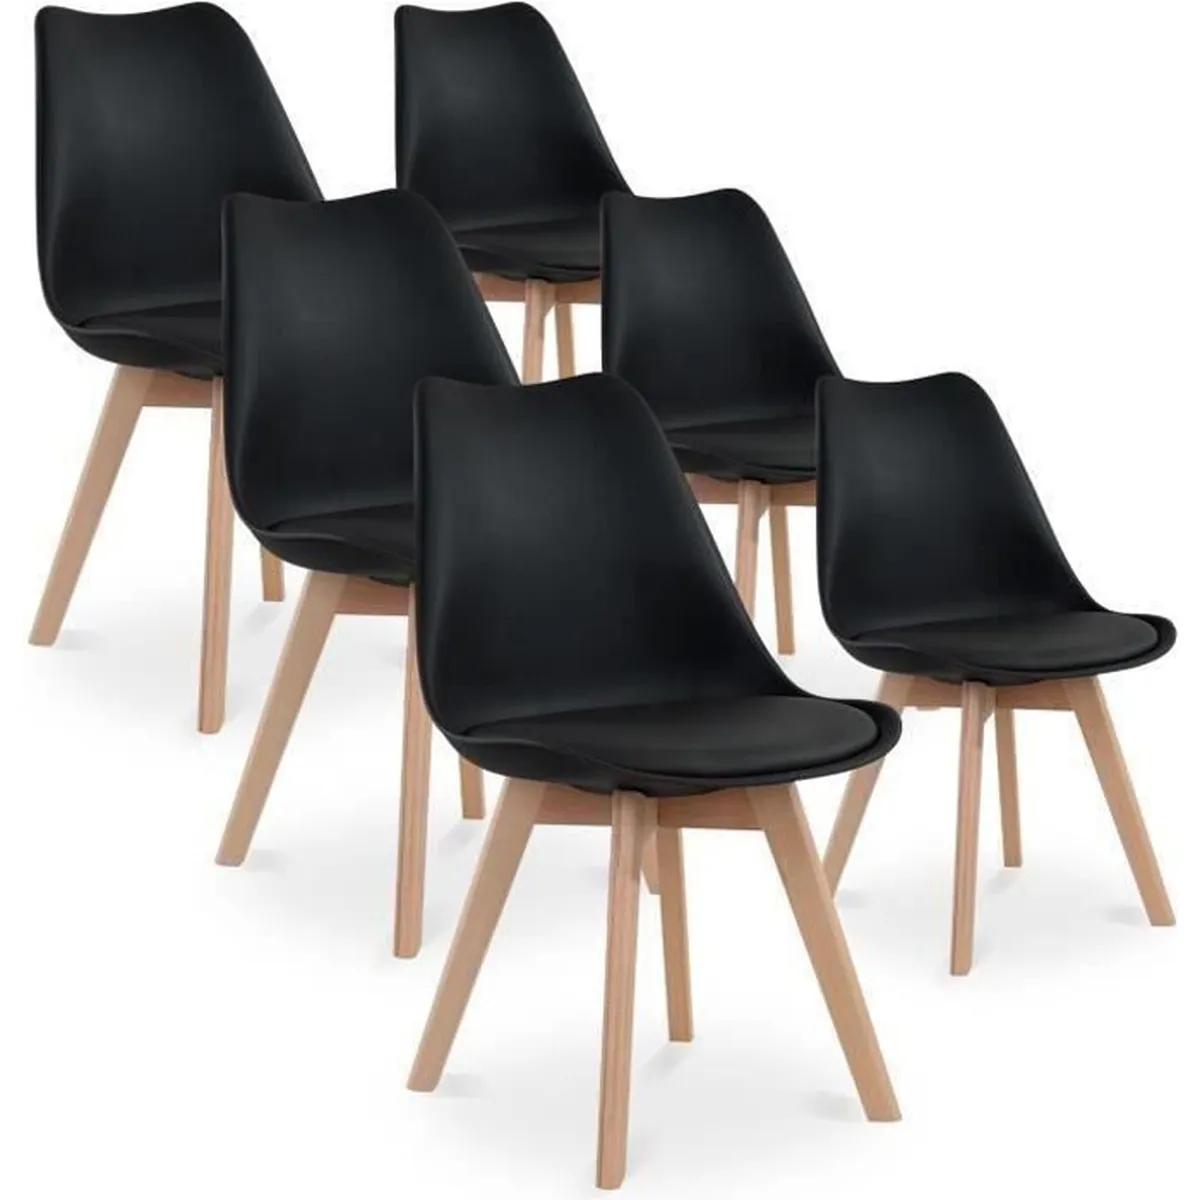 Bon plan : le lot de 6 chaises scandinaves Catherina © Cdiscount